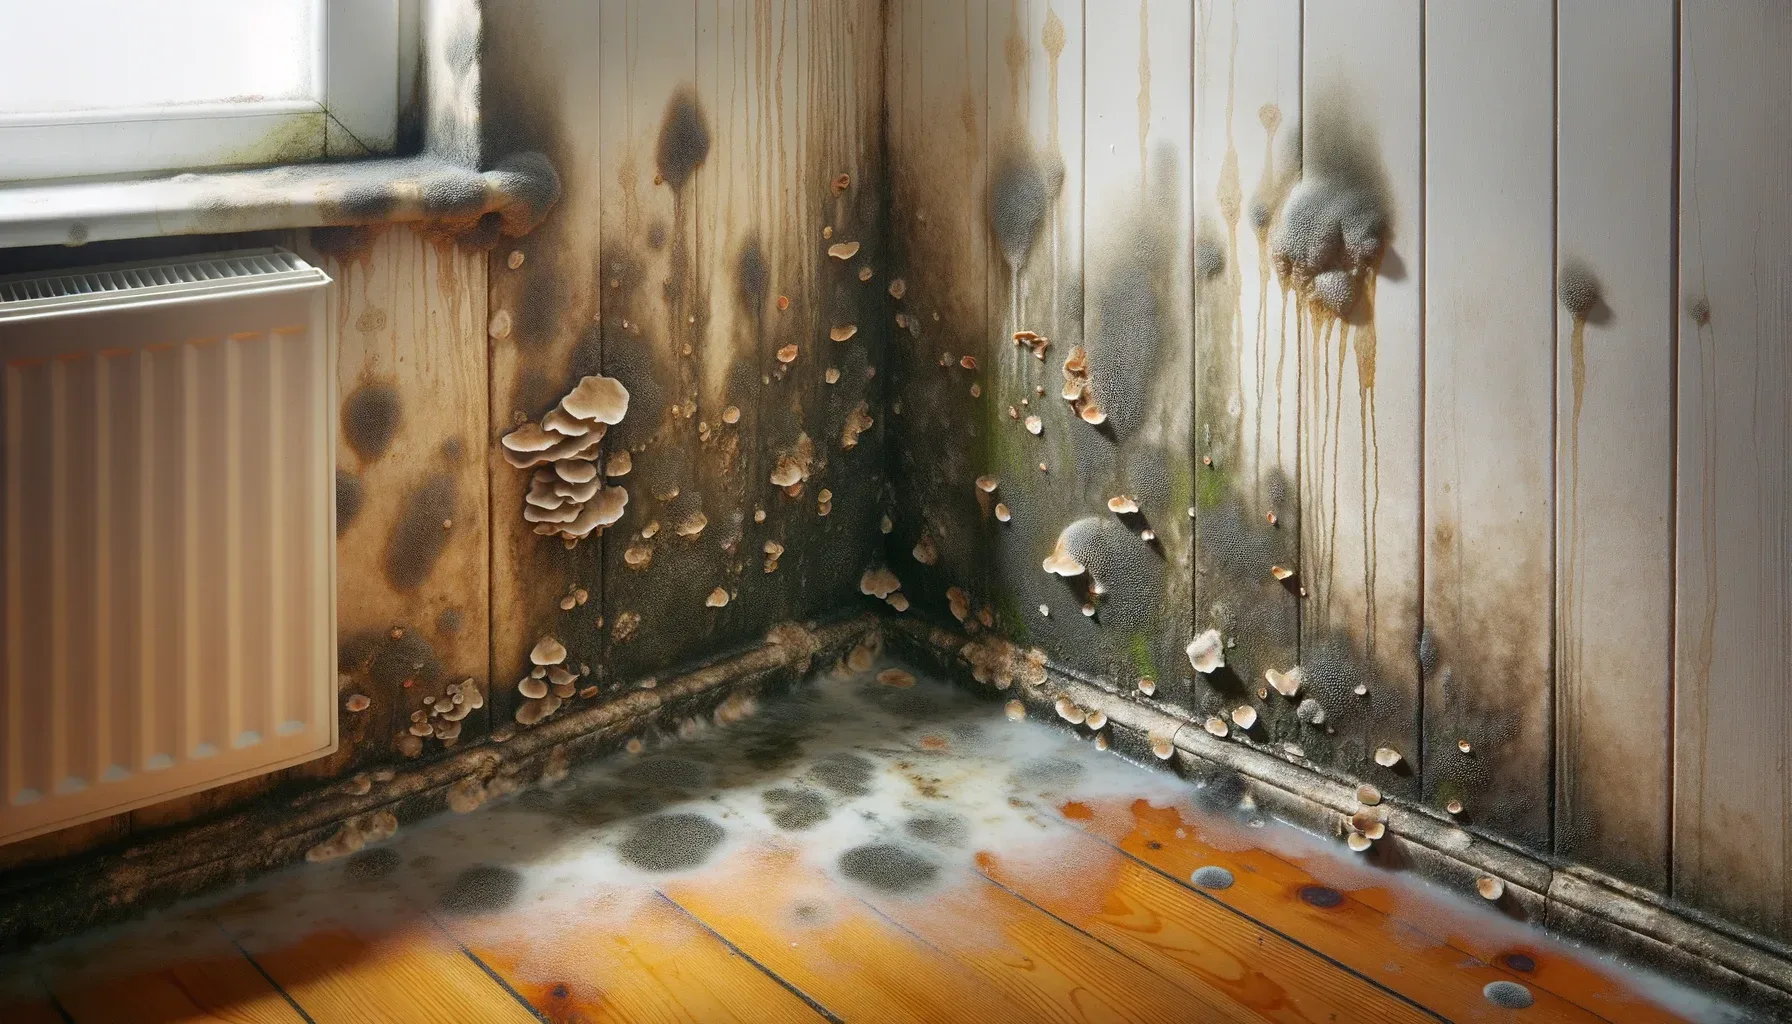 Cómo quitar el moho de las paredes sin dañar la pintura?: los mejores  trucos caseros, Respuestas